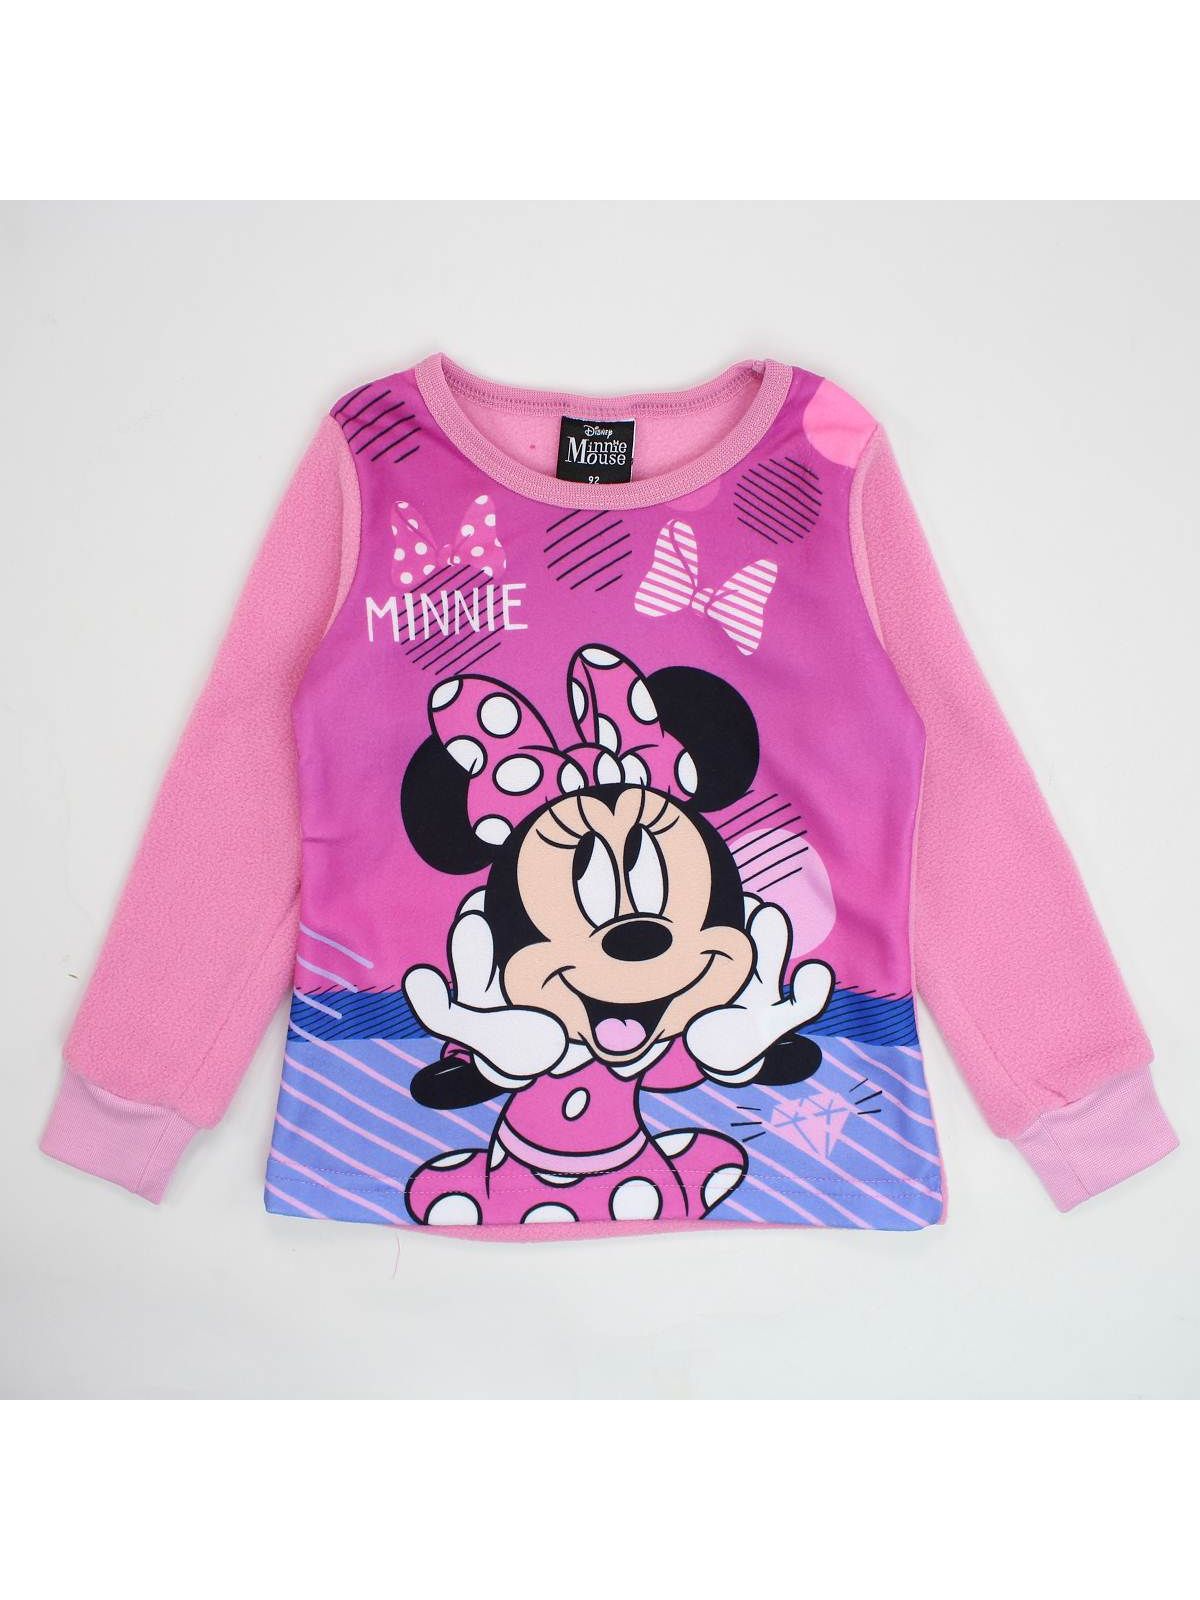 Minnie pajamas